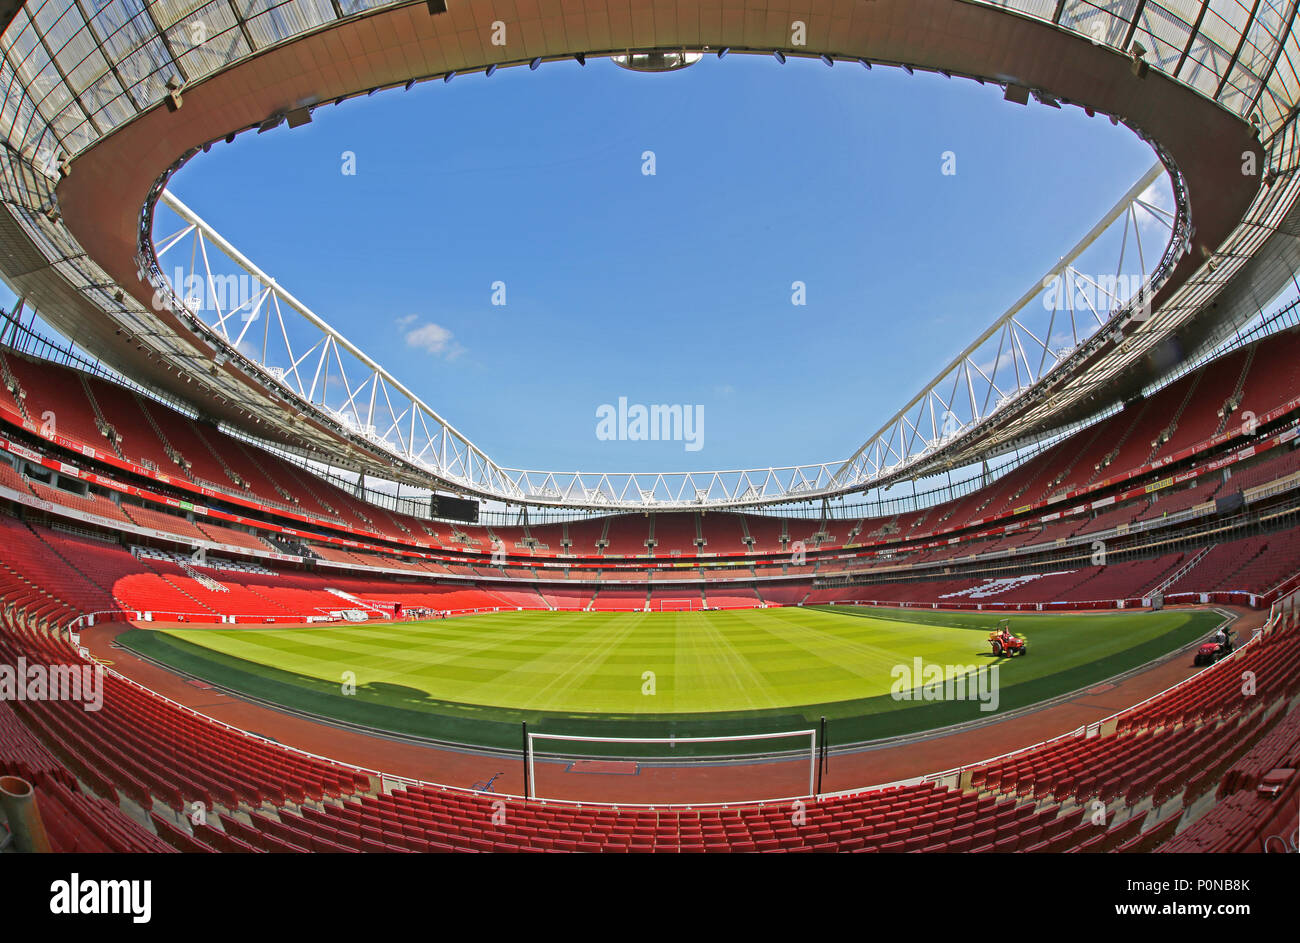 Imagen de ojo de pez del tono en Londres Emirates Stadium, hogar del equipo de fútbol de la Liga Premier al Arsenal. Vacía. Muestra tractor cortando el pasto. Foto de stock